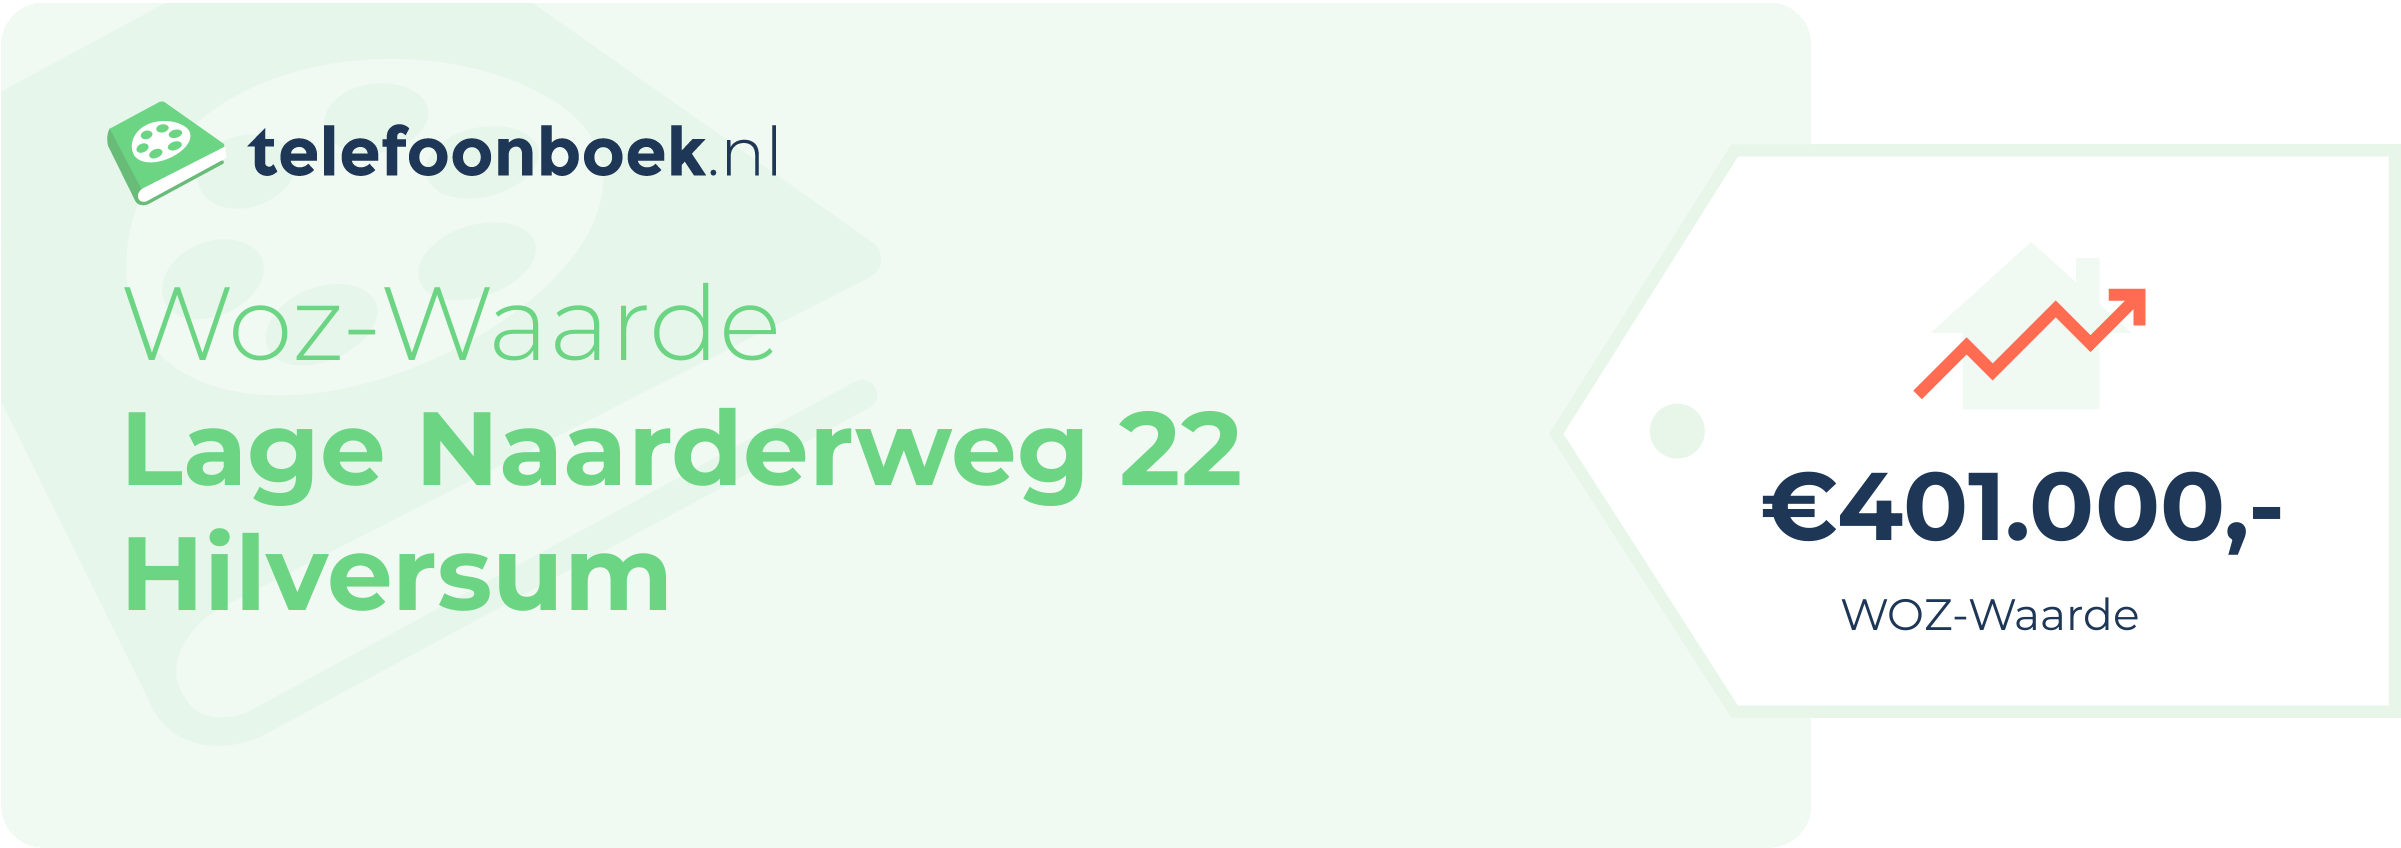 WOZ-waarde Lage Naarderweg 22 Hilversum